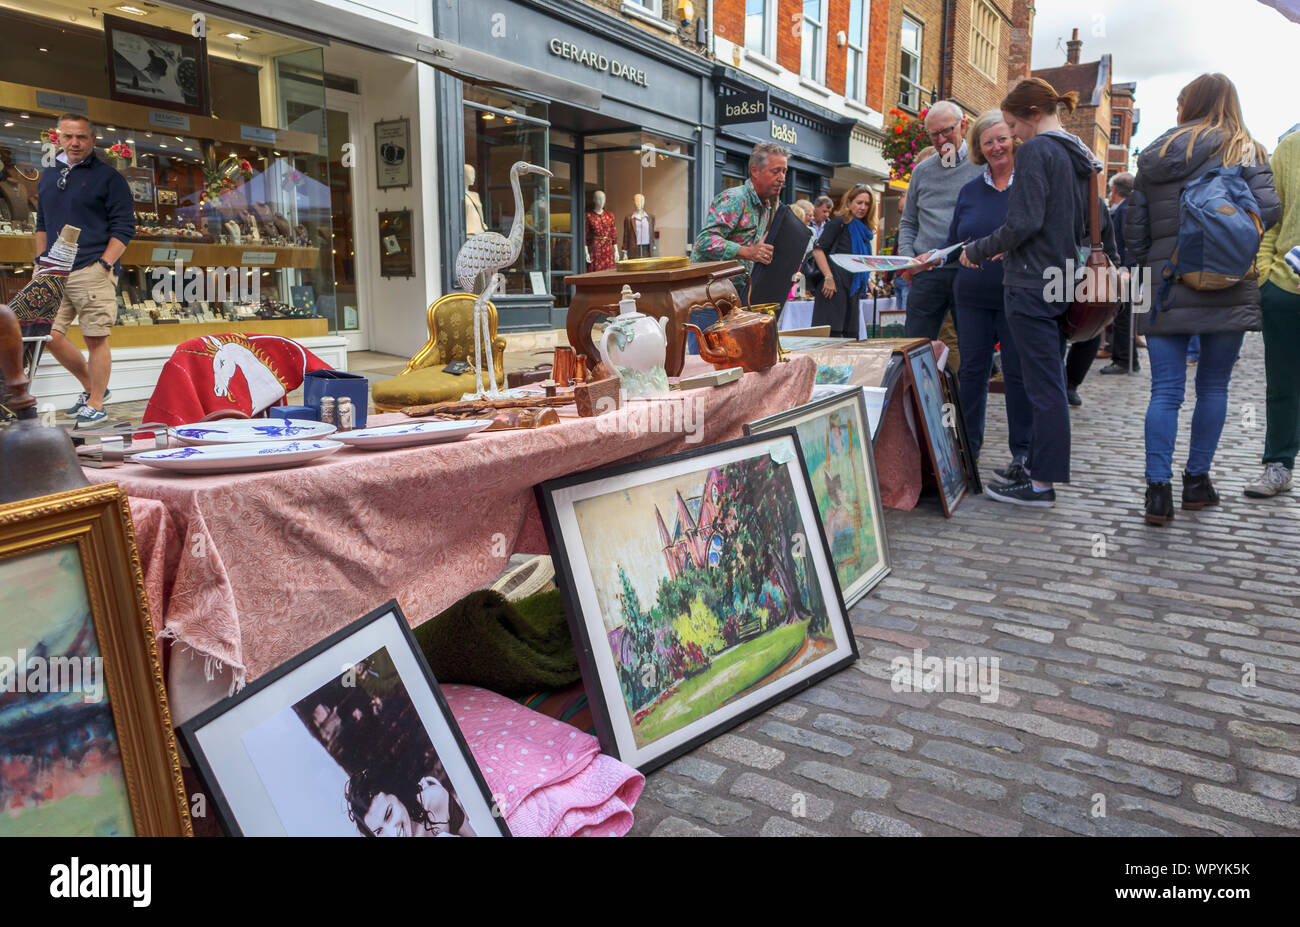 Mit einer Anzeige von Bildern und ephemera in Guildford Antike & Brocante Street Market, High Street, Guildford, Surrey, Südosten, England, Grossbritannien Abschaltdruck Stockfoto